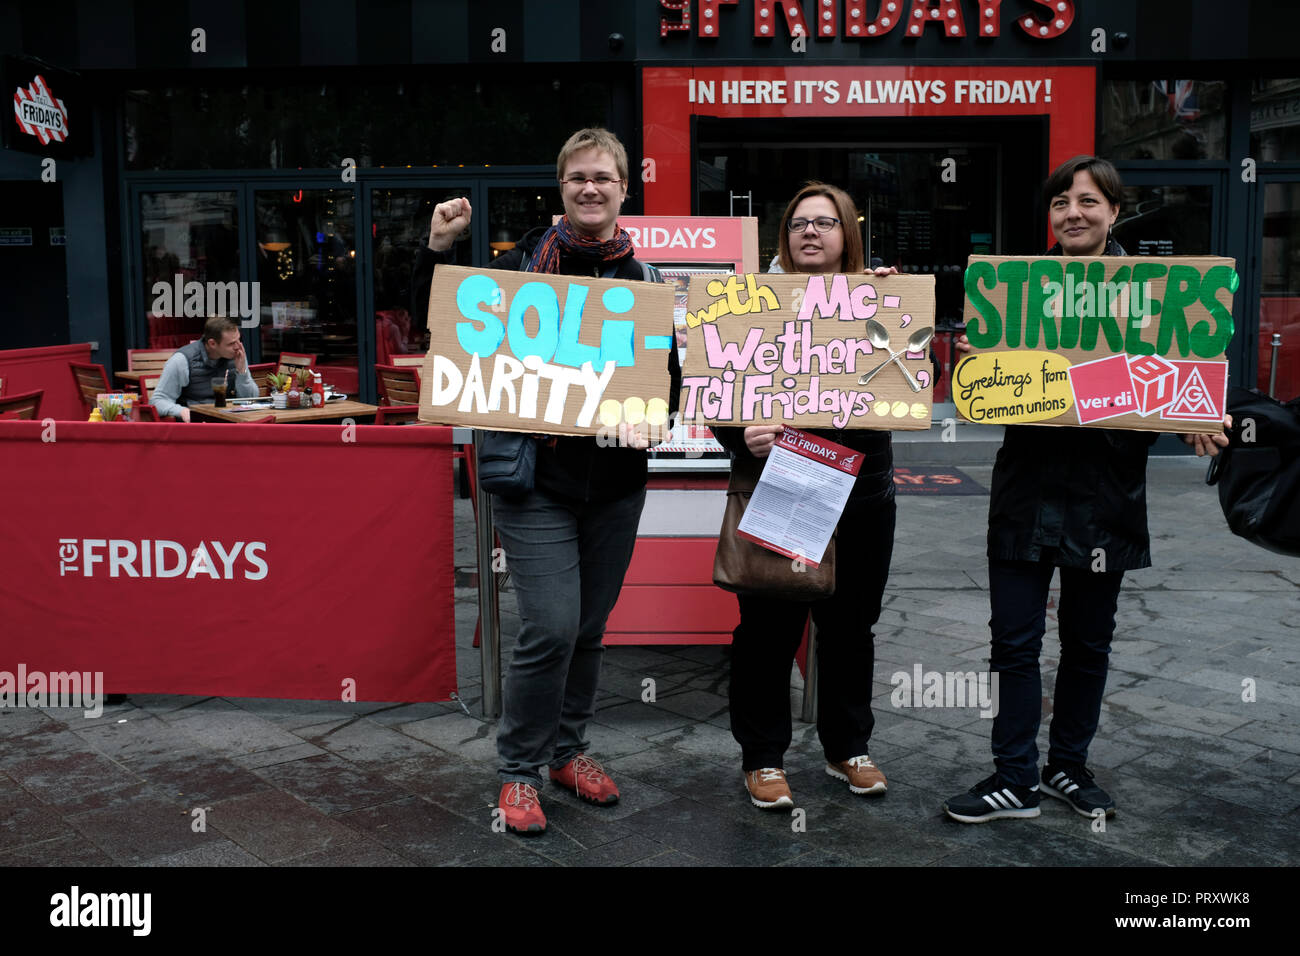 Die demonstranten gesehen halten Plakate vor einem TGI Fridays während des Protestes. Wetherspoons, TGI Fridays, und McDonald's Arbeiter Kundgebung zusammen in London, bessere Arbeitsbedingungen und eine angemessene Bezahlung in der Hotellerie zu verlangen. Stockfoto